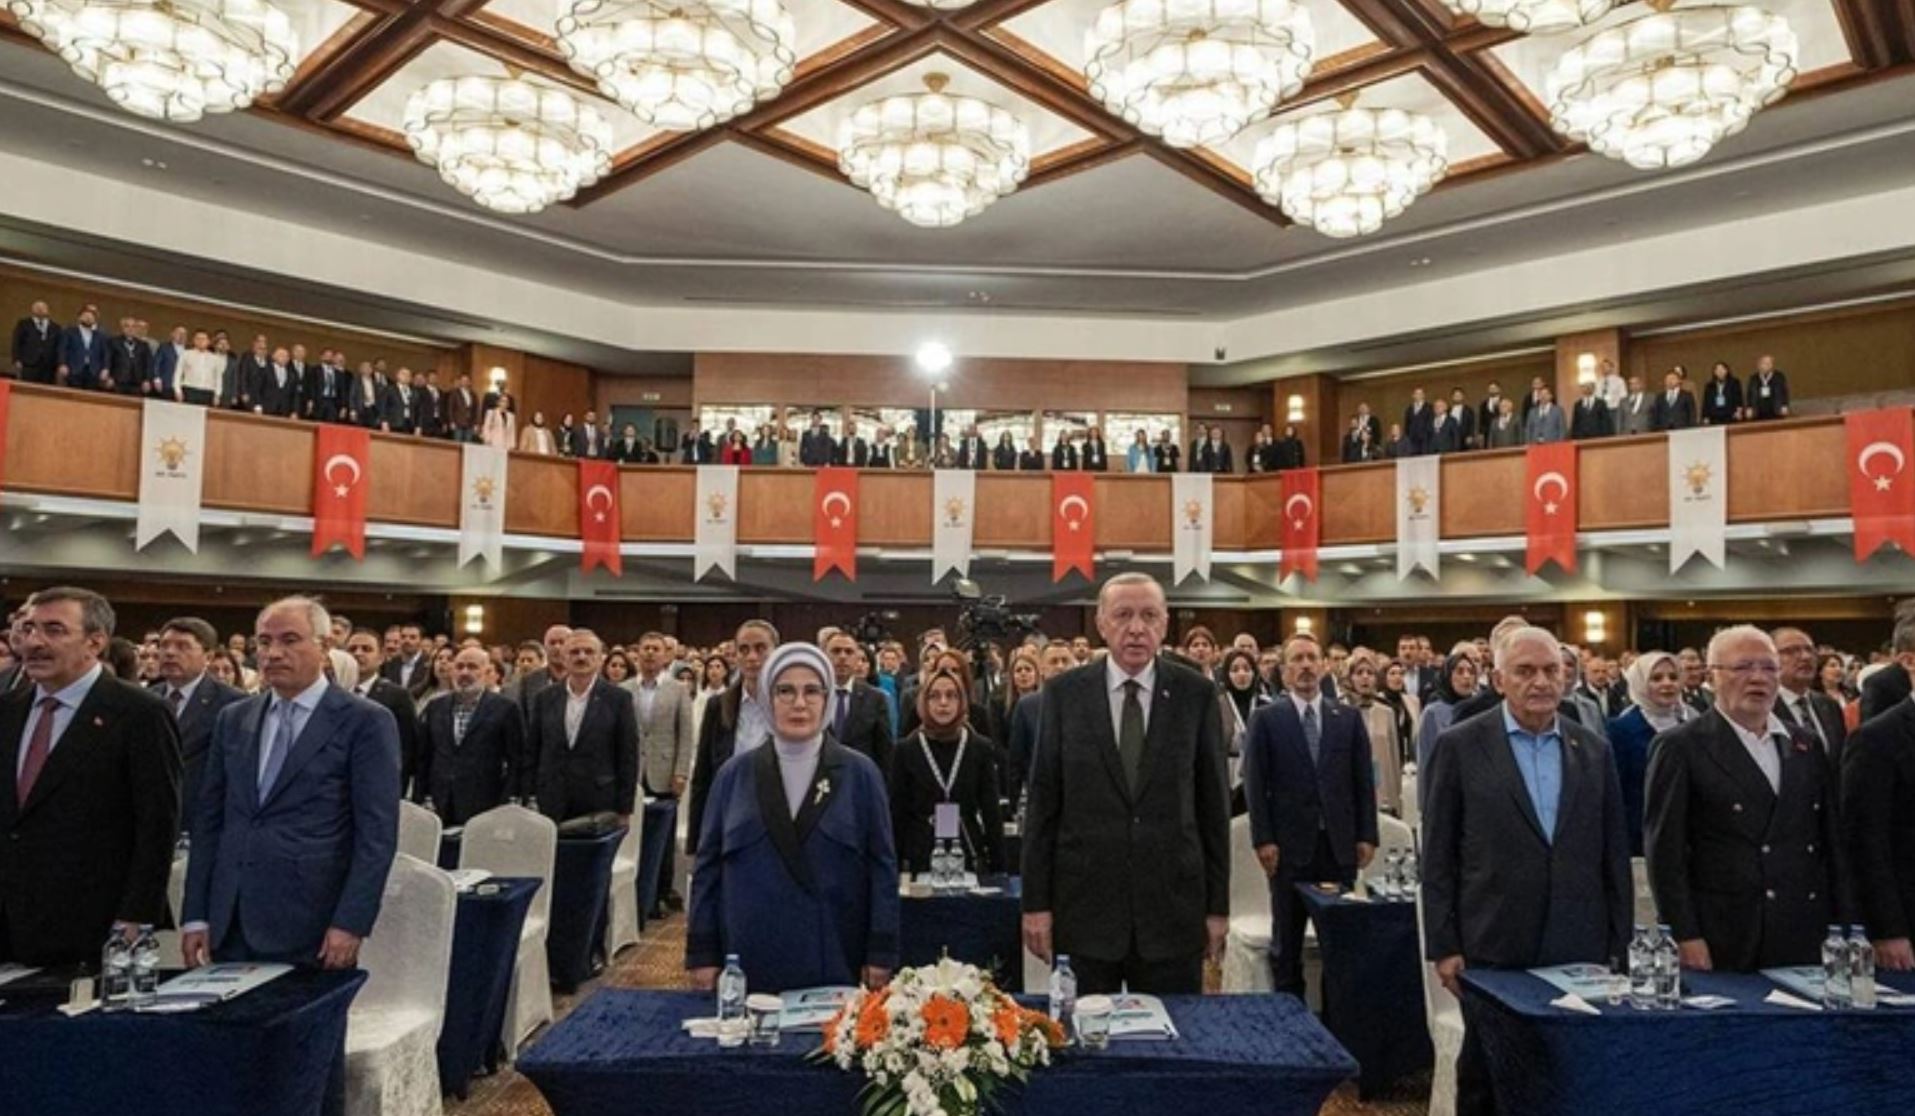 Kızılcahamam’da AKP yönetimine sert eleştiriler:”Hiçbir şey olmamış gibi orada oturuyorsunuz”